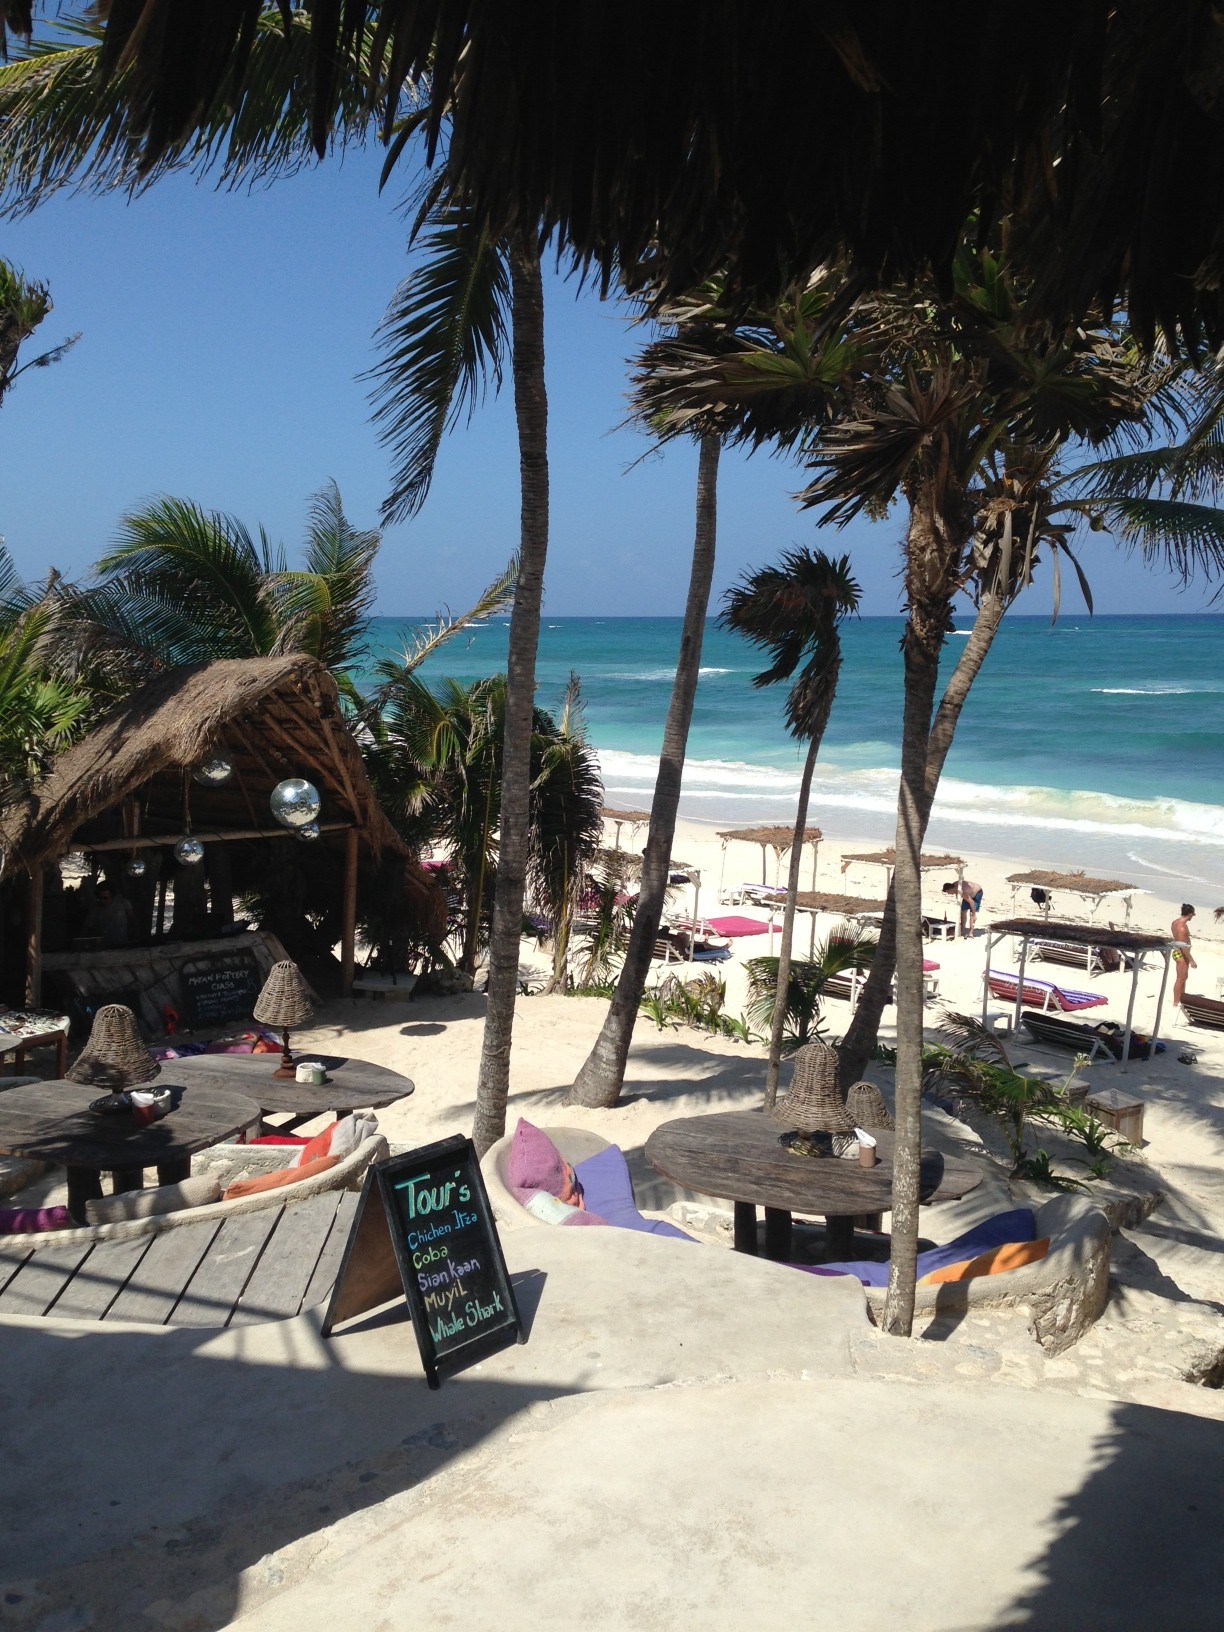 PPP beach club restaurant terraces 3